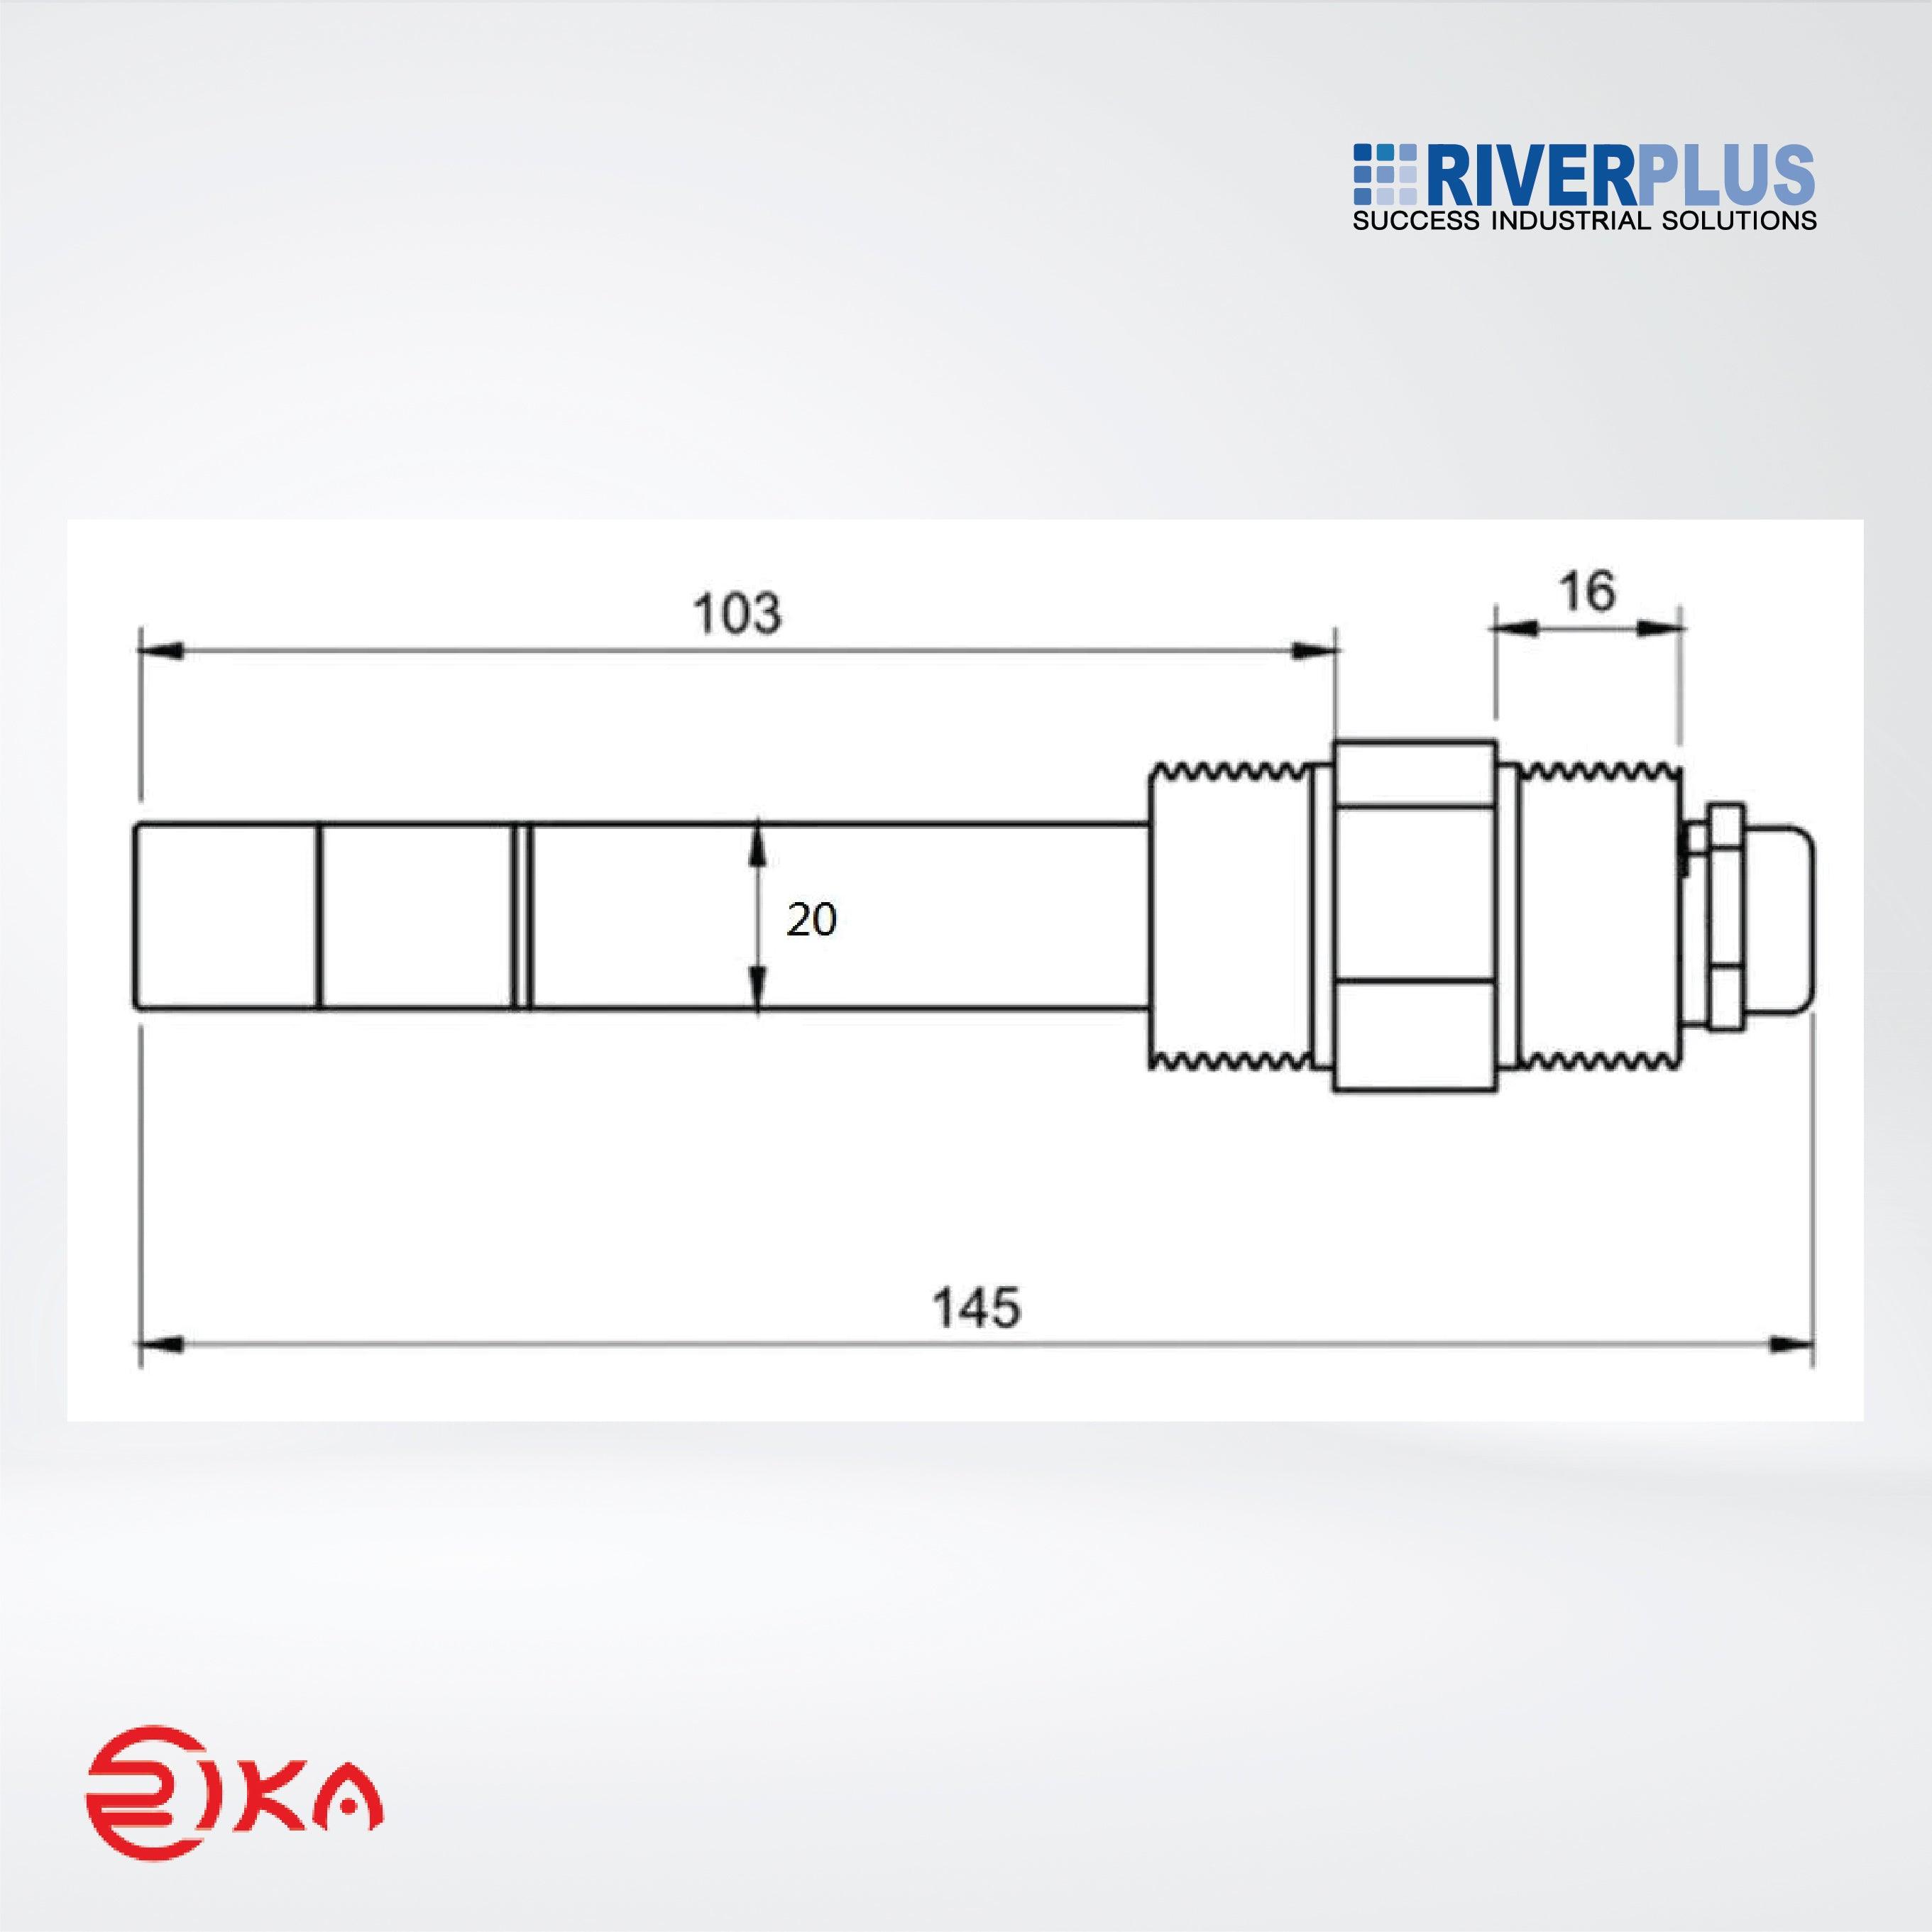 RK500-07 (SS) Turbidity Sensor - Riverplus